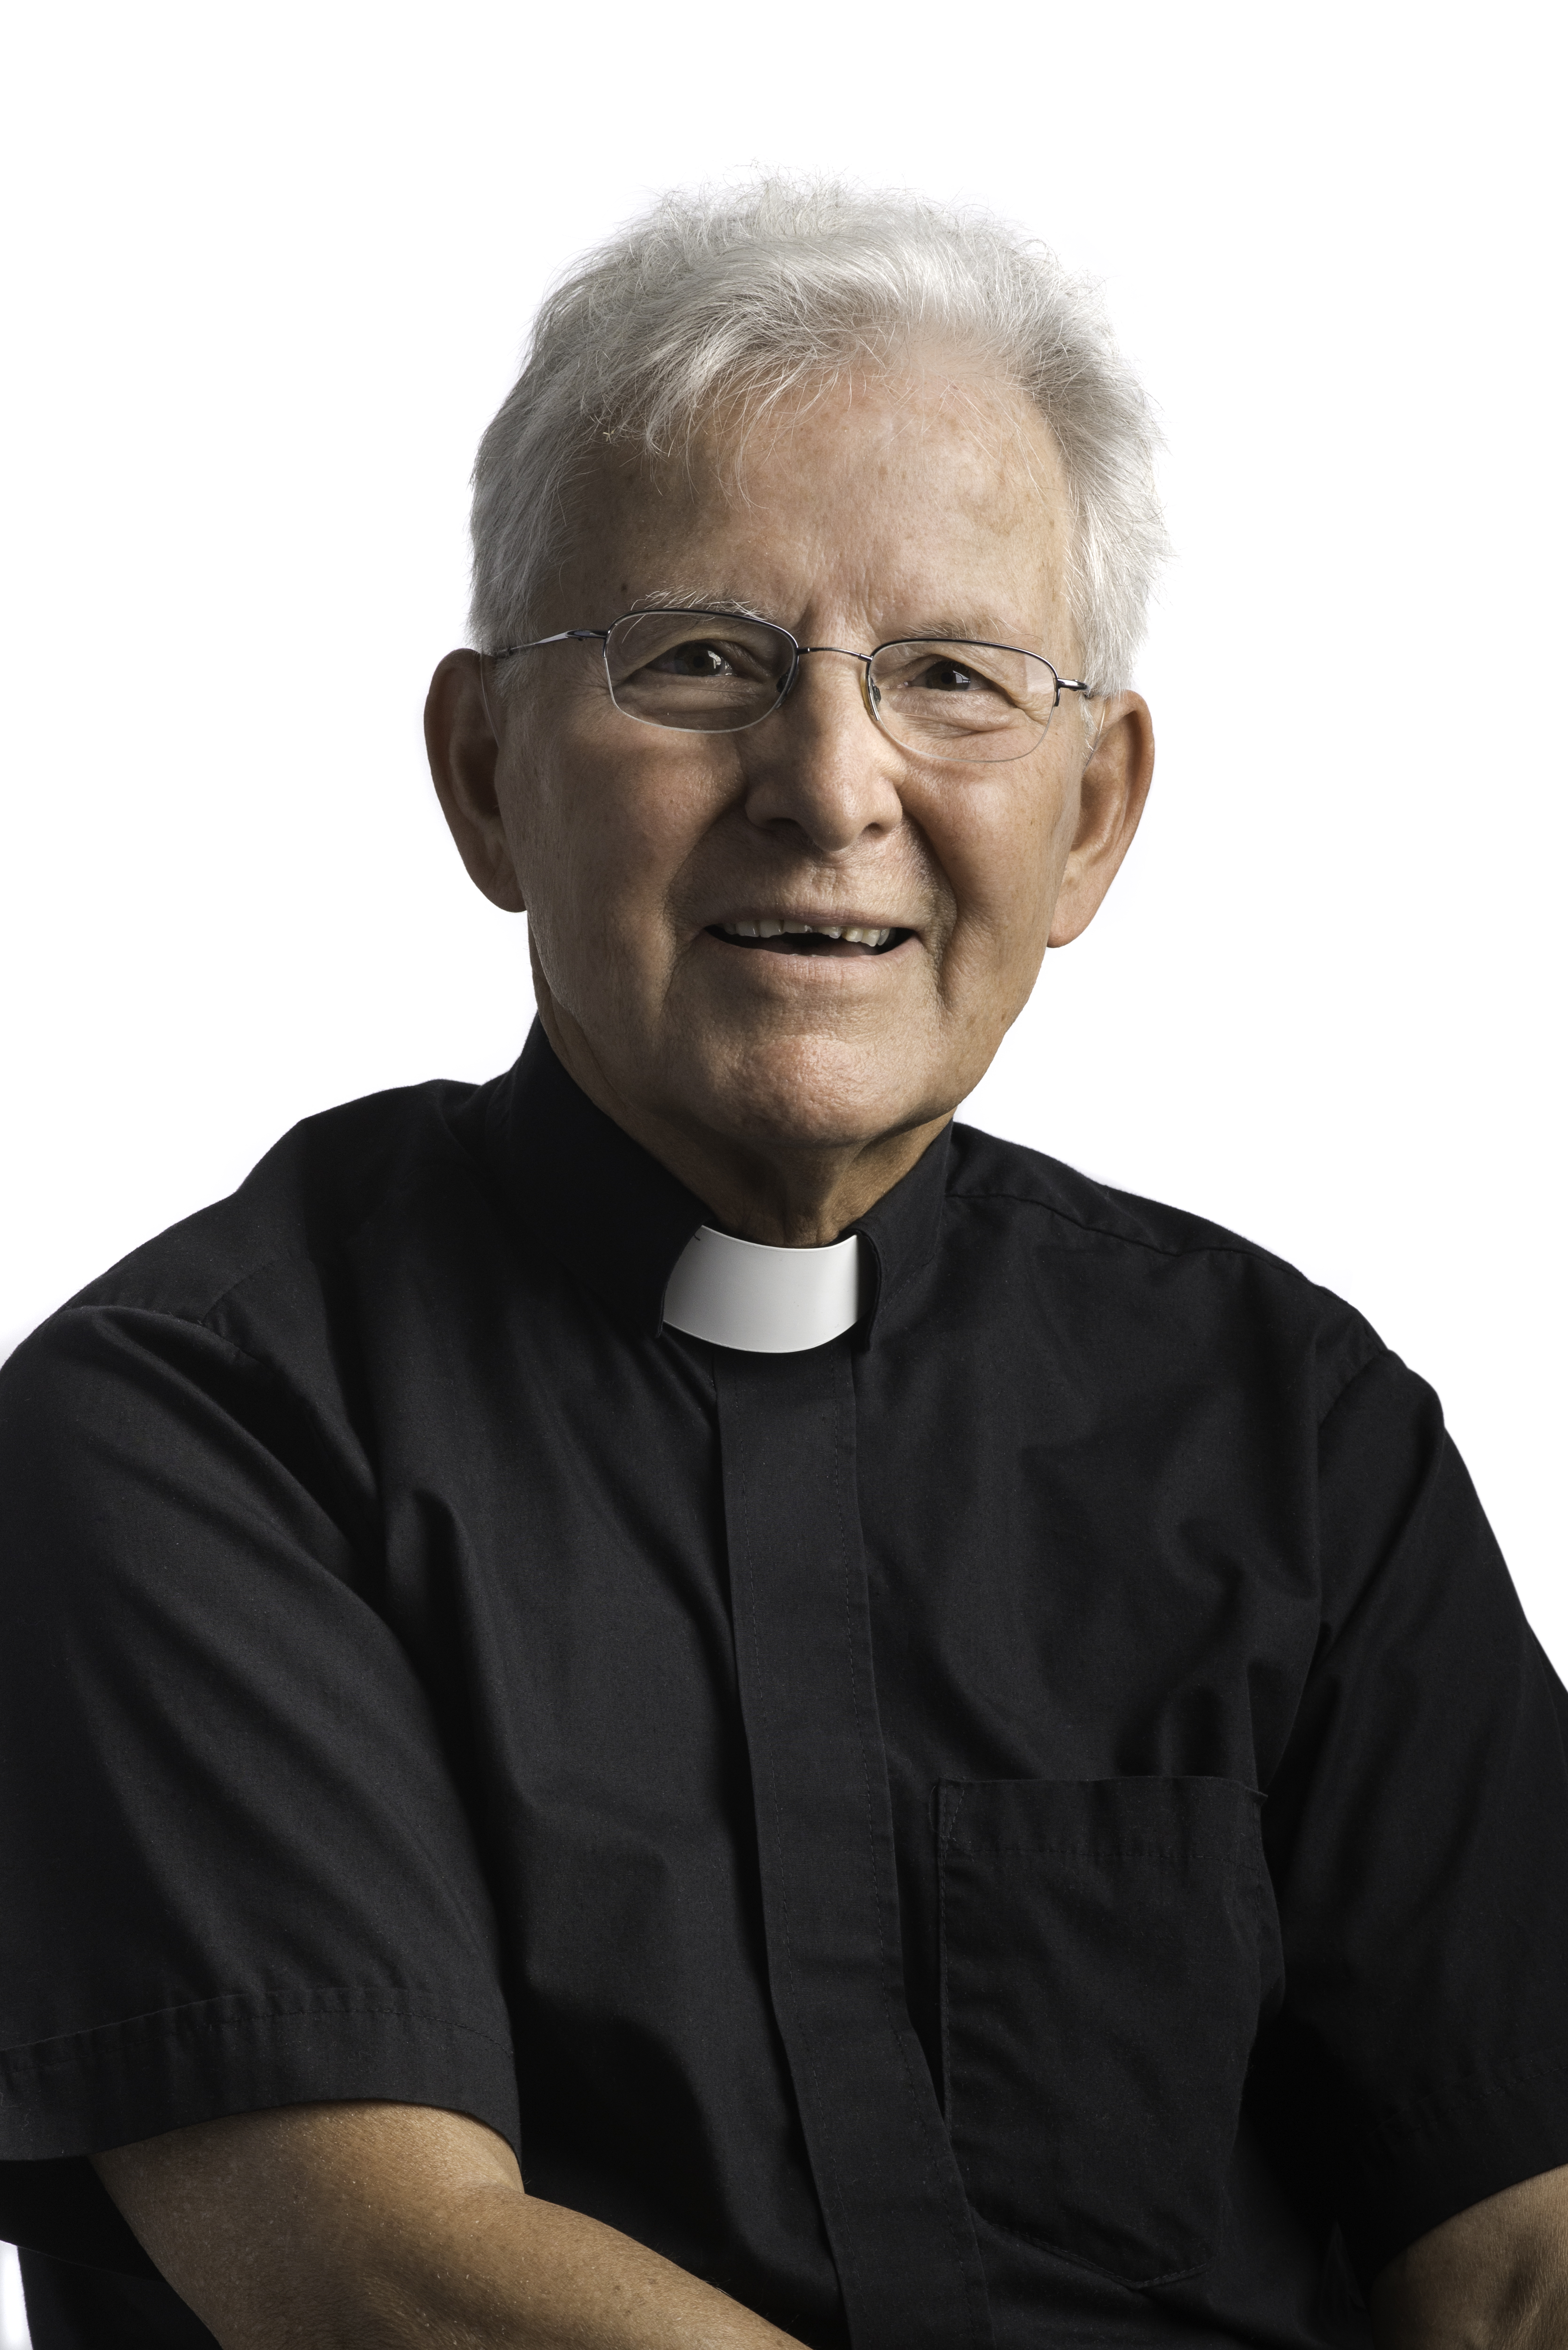 Rev. Jan Bednarz